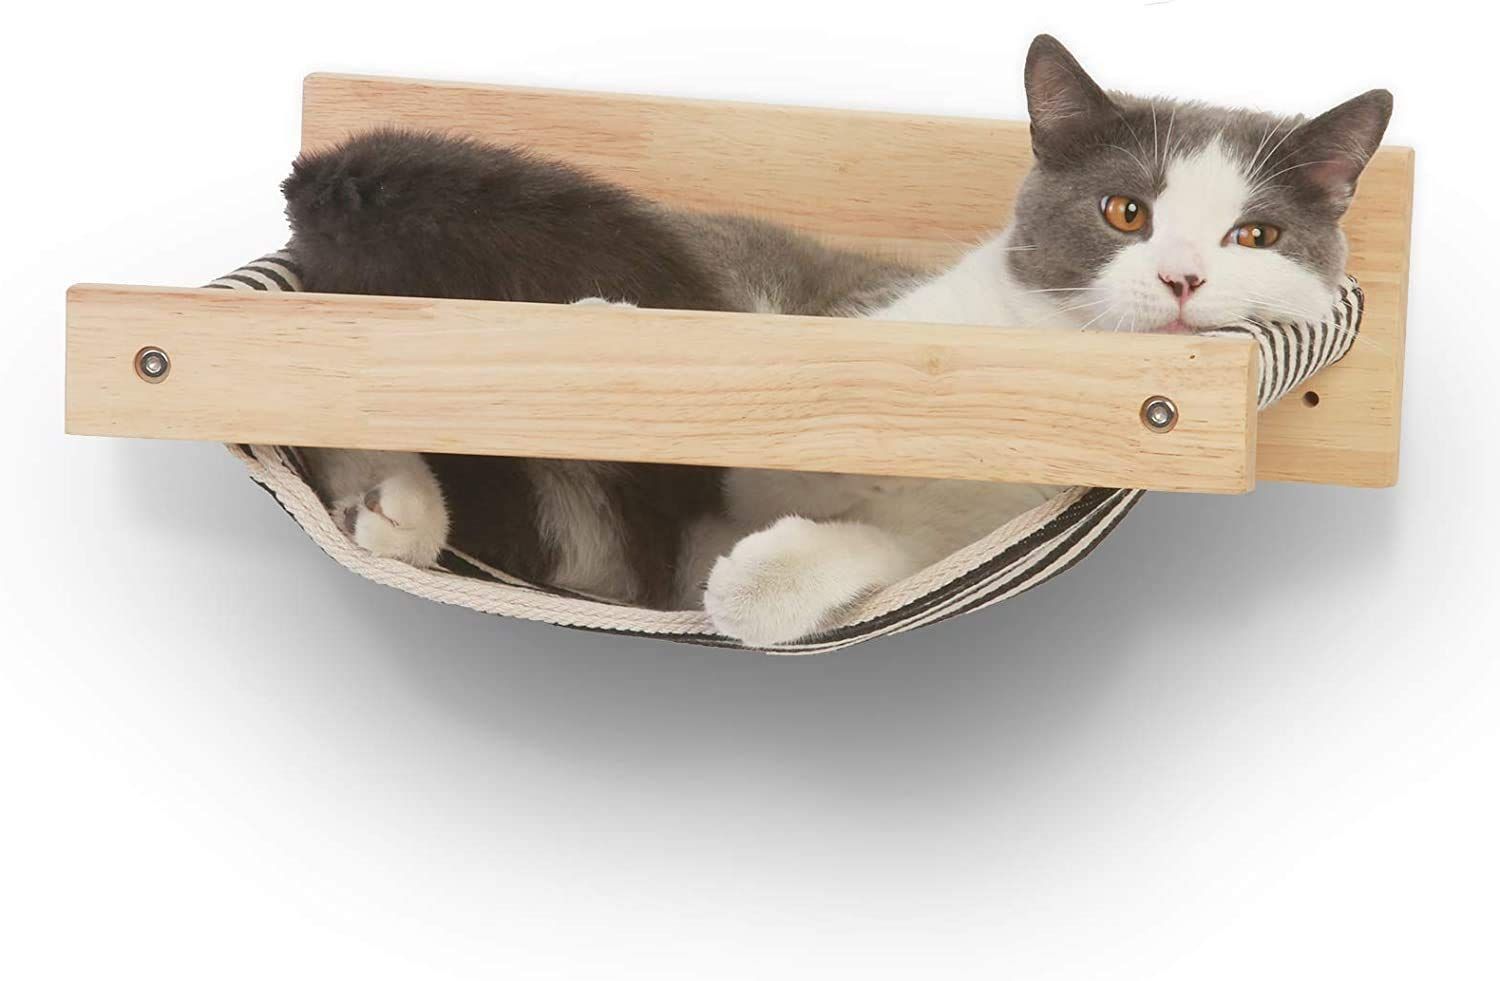 新着商品】FUKUMARU壁掛け式猫用ハンモック、ラバーウッド製骨組み、睡眠、運動、休憩等が可能な猫用ハンモックです。15㎏でも大丈夫  (黒と白のストライプ) フォーユーバリュー メルカリ